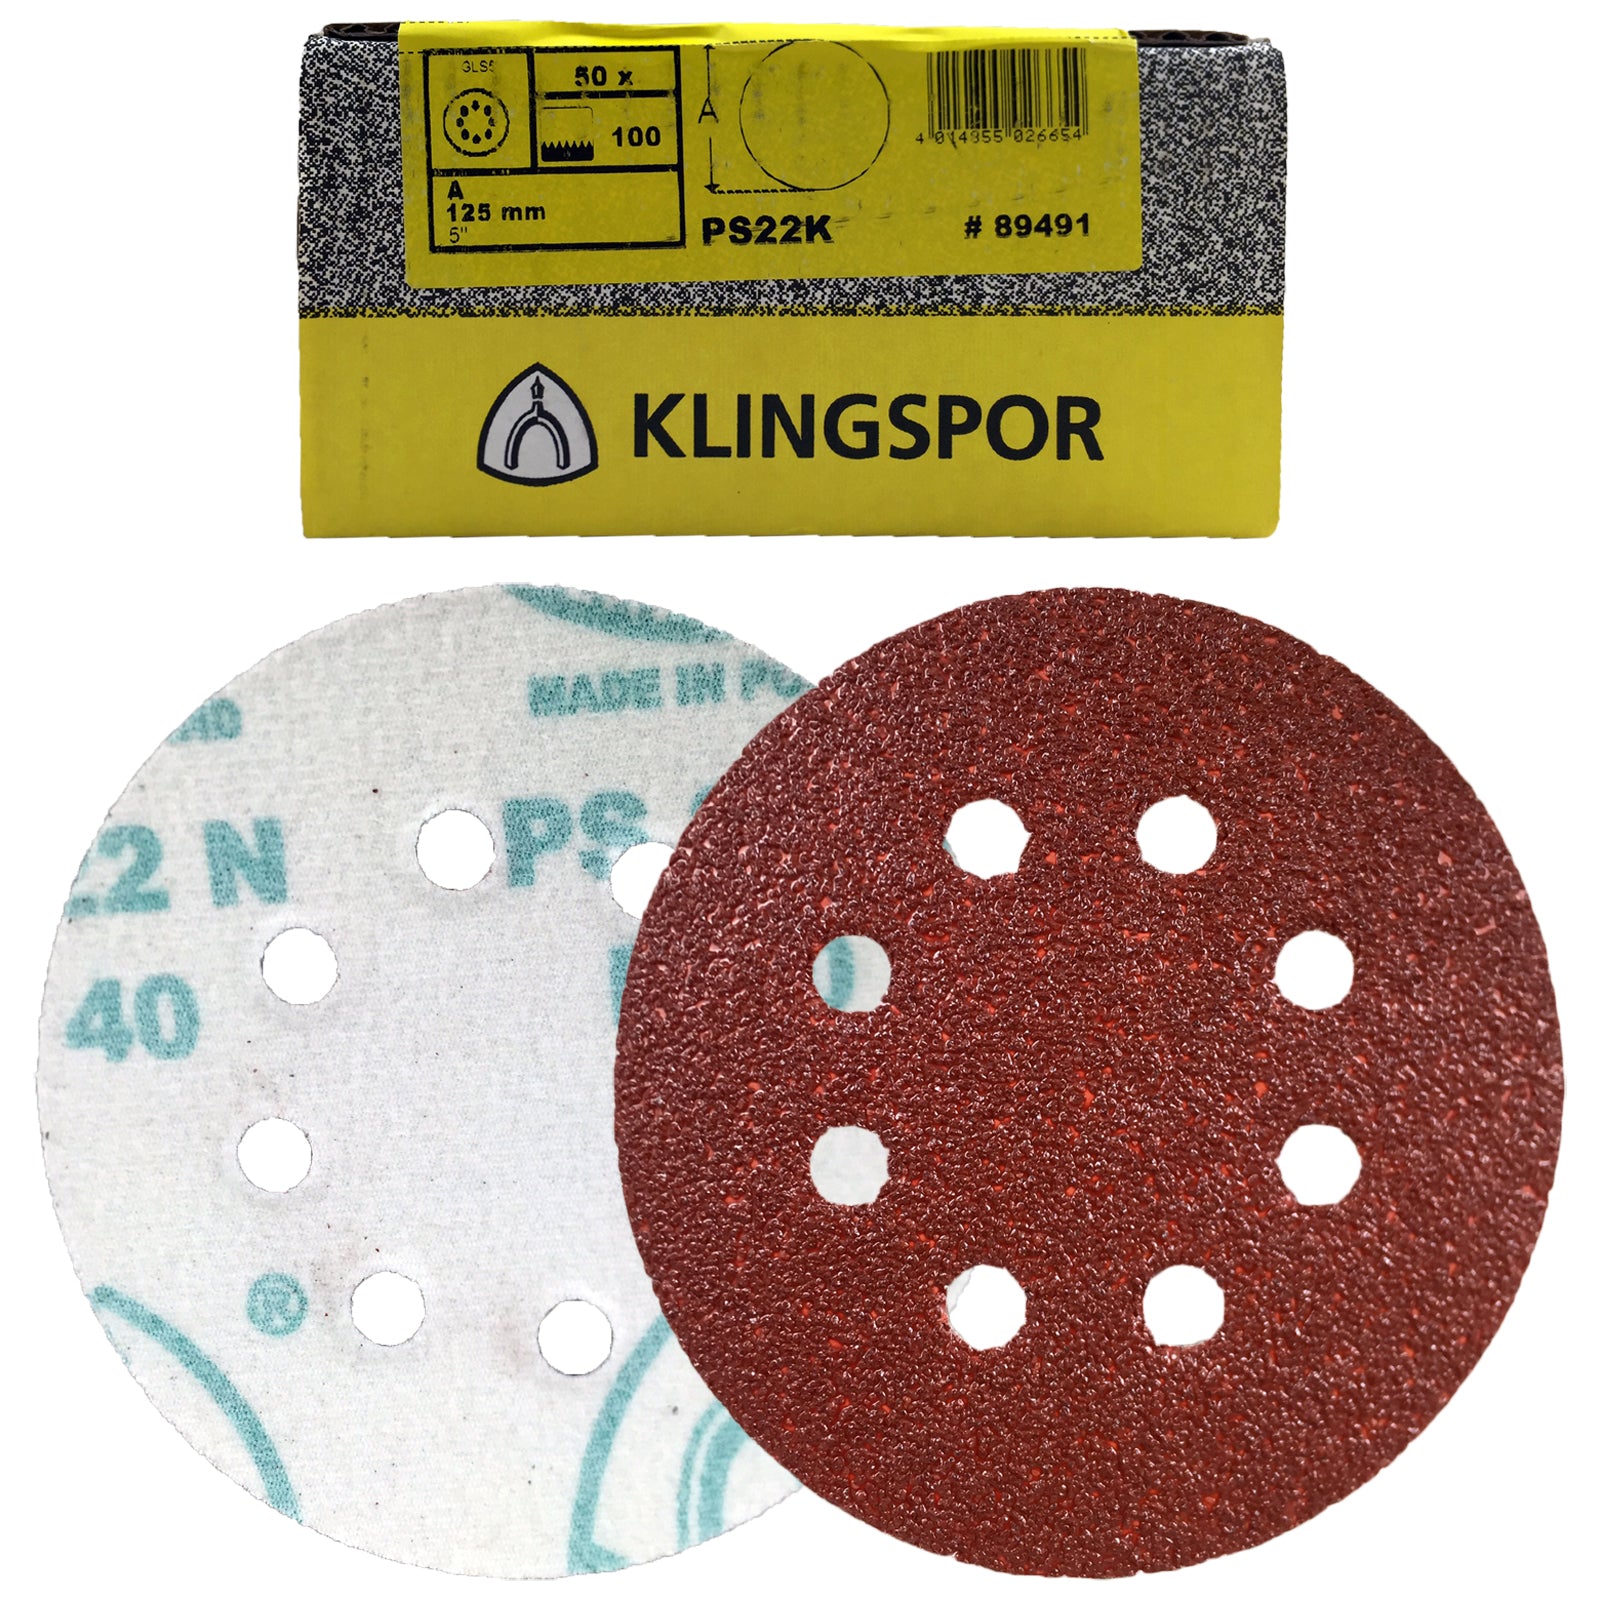 Klingspor PS22K Hook and Loop Sanding Discs 40-400 Grit